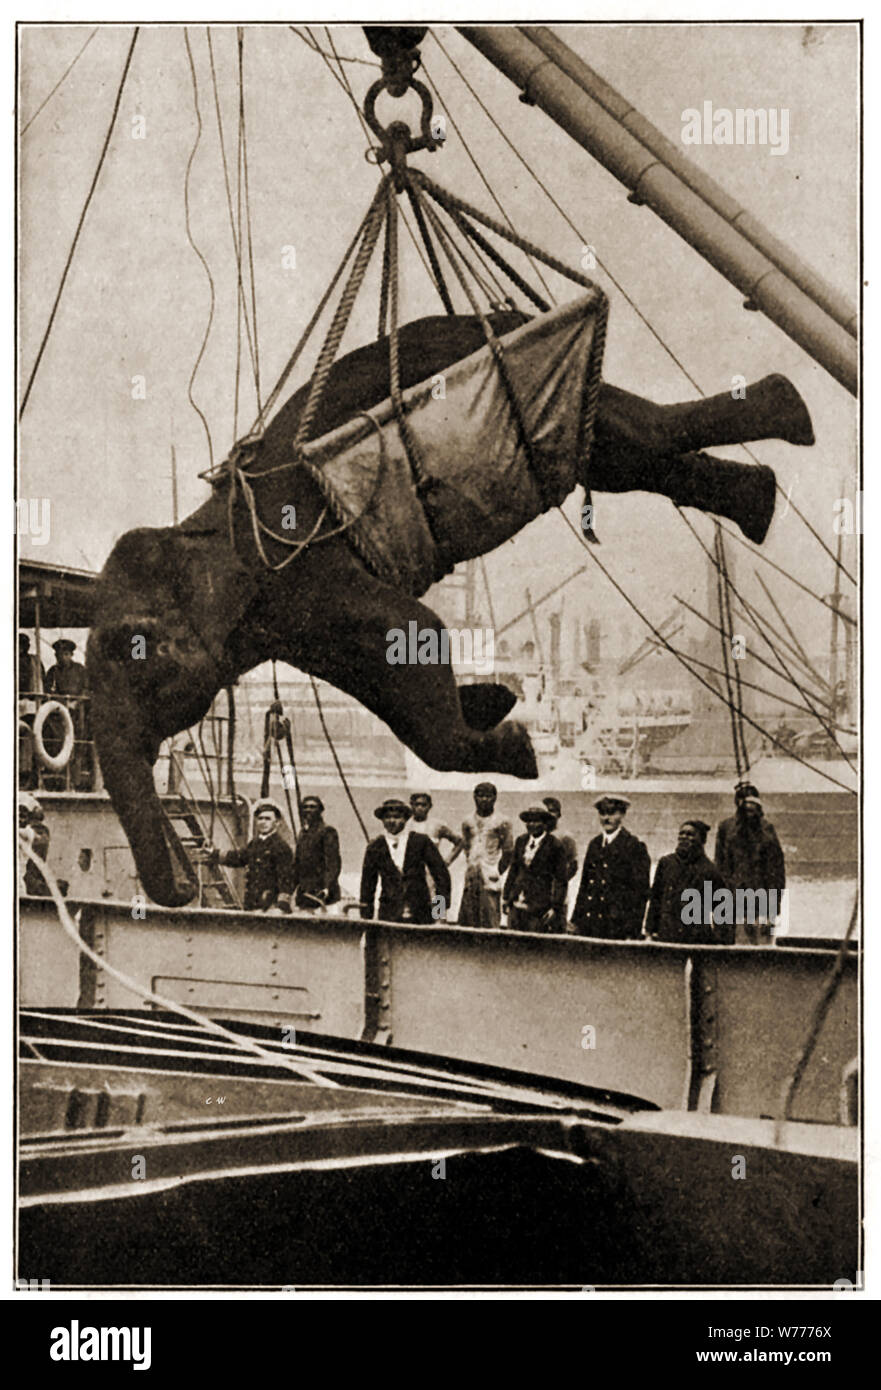 Déchargement Minnie l'éléphant d'un navire à l'aide d'une élingue géant.. L'un des nombreux éléphants qui ont été portées à la Grande-Bretagne à se joindre les zoos,ménageries ou prendre part à des spectacles de cirque. Vers 1940 Banque D'Images